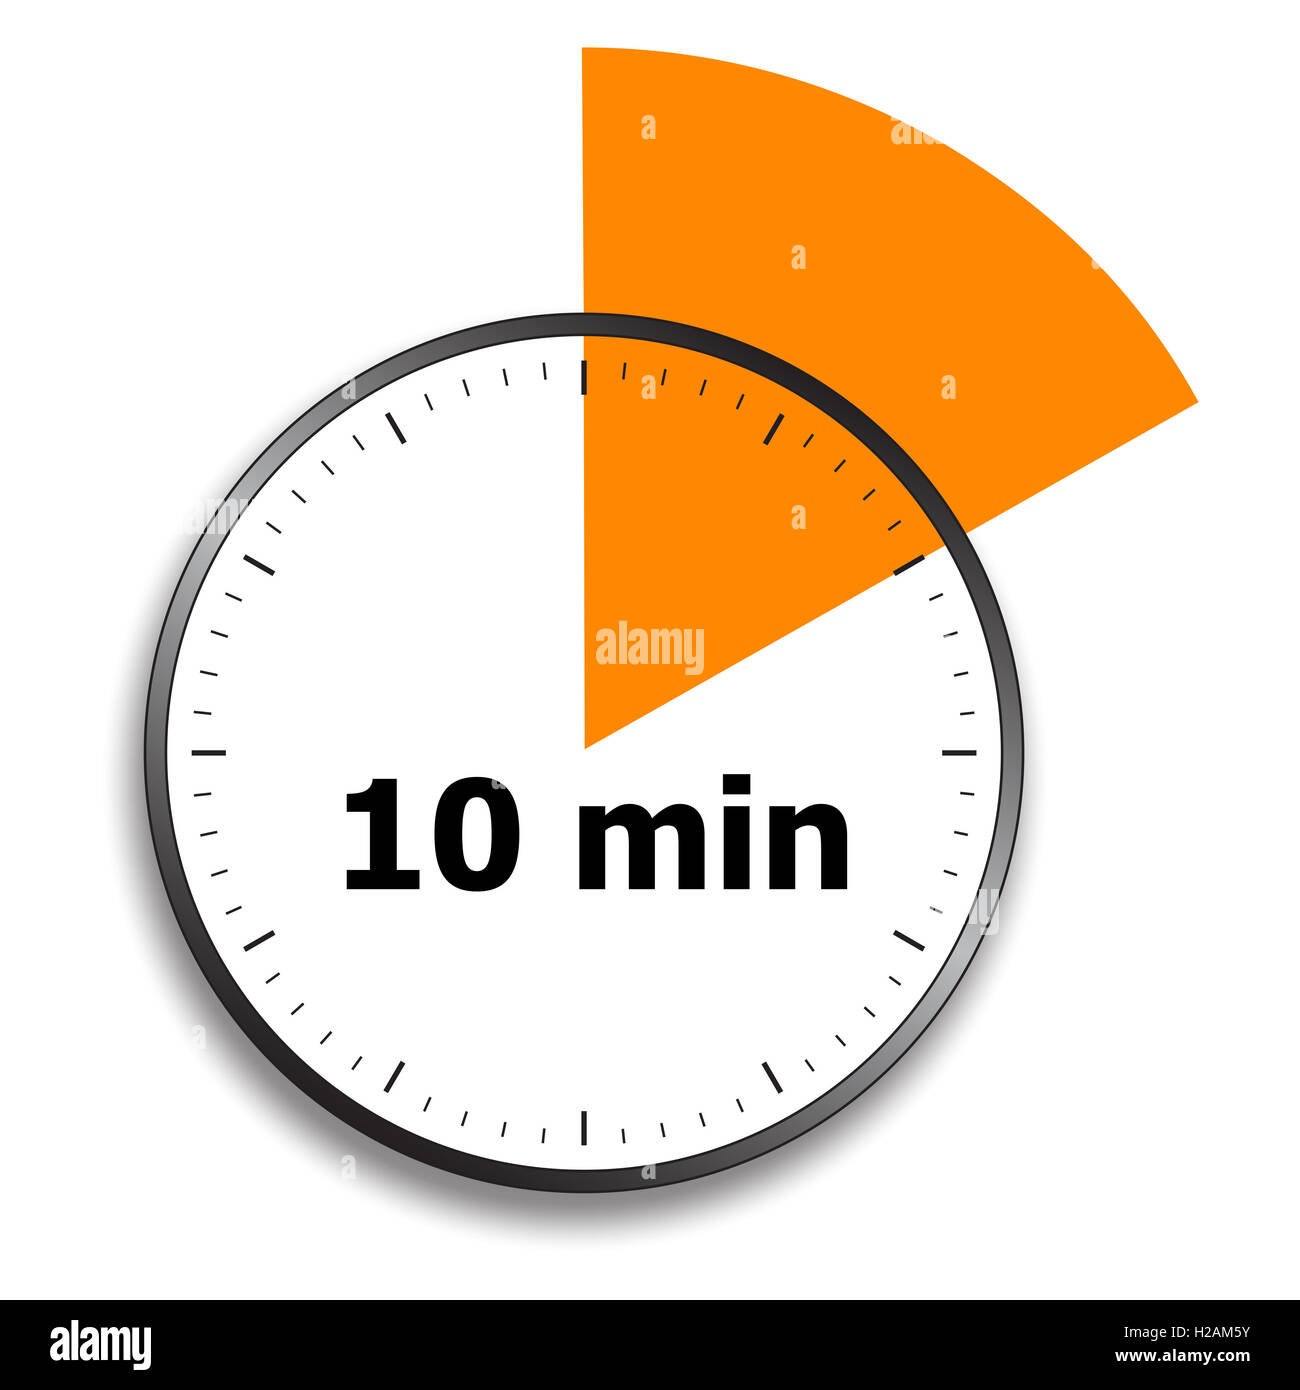 А4 10 минут. Часы 10 минут. Таймер 10 мин. 10 Минут. Часы осталось 10 минут.